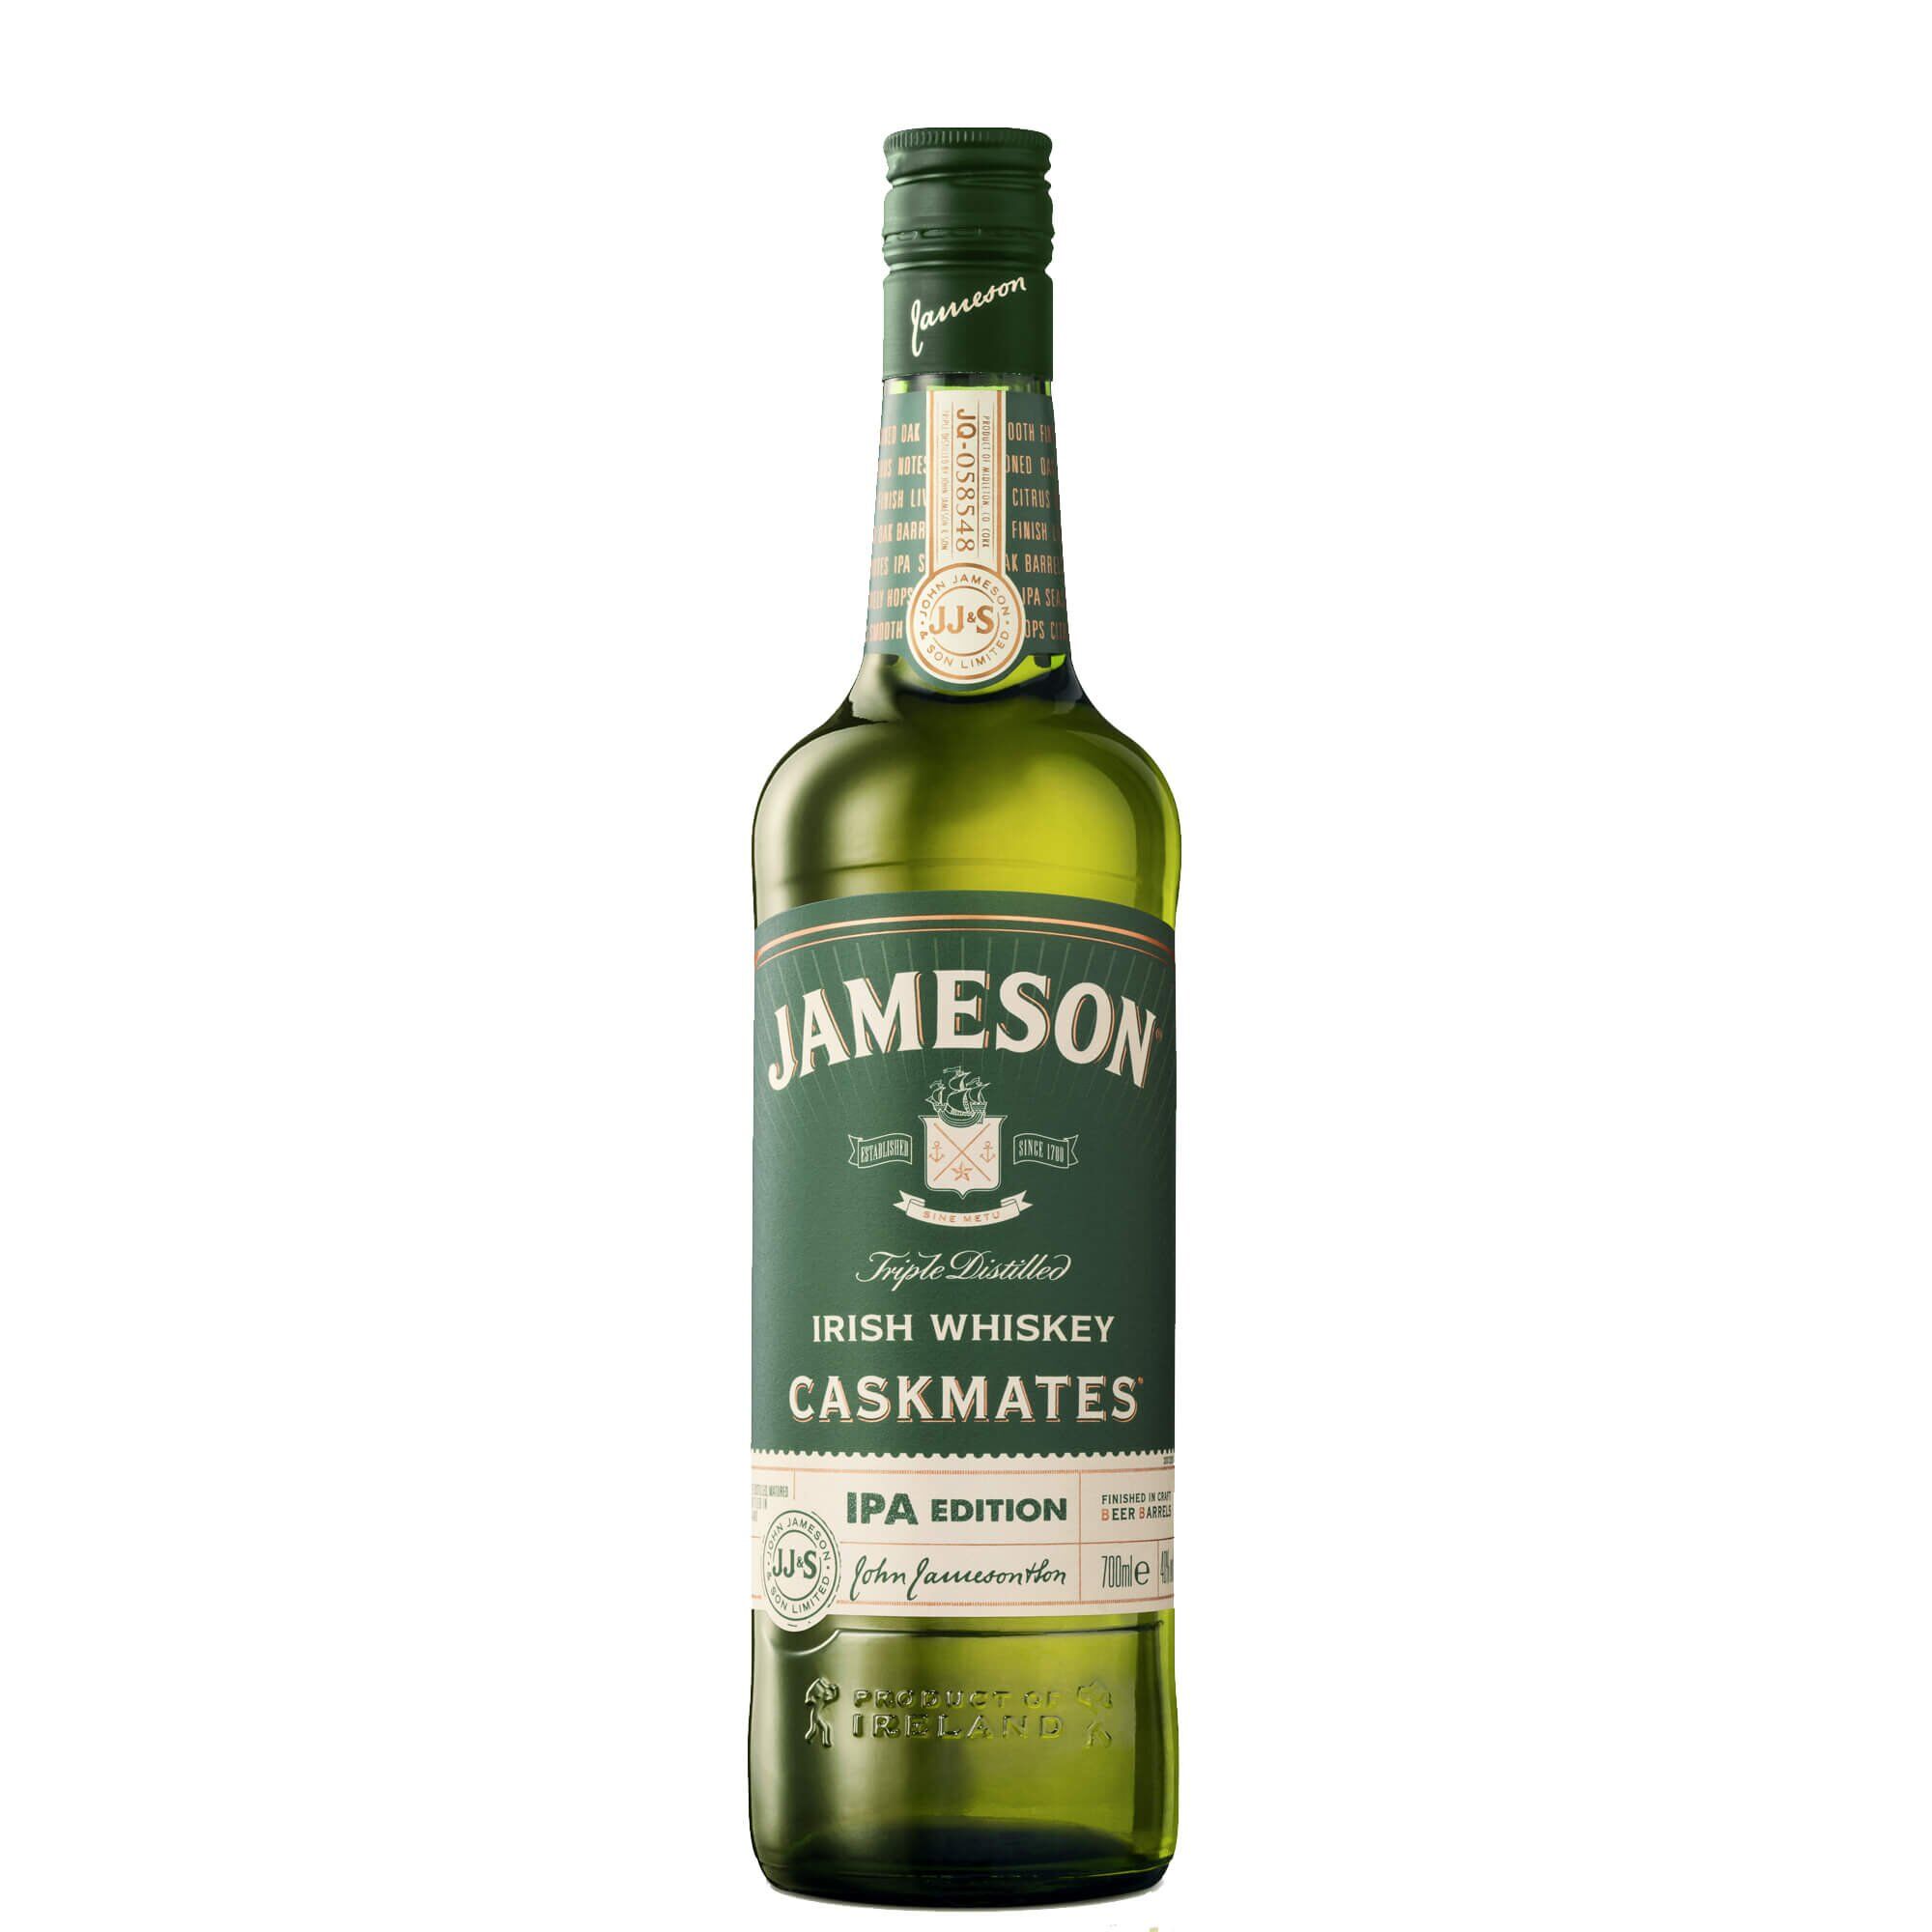 Jameson Irish Whiskey Ireland Blended Irish Whiskey Caskmates Ipa Edition